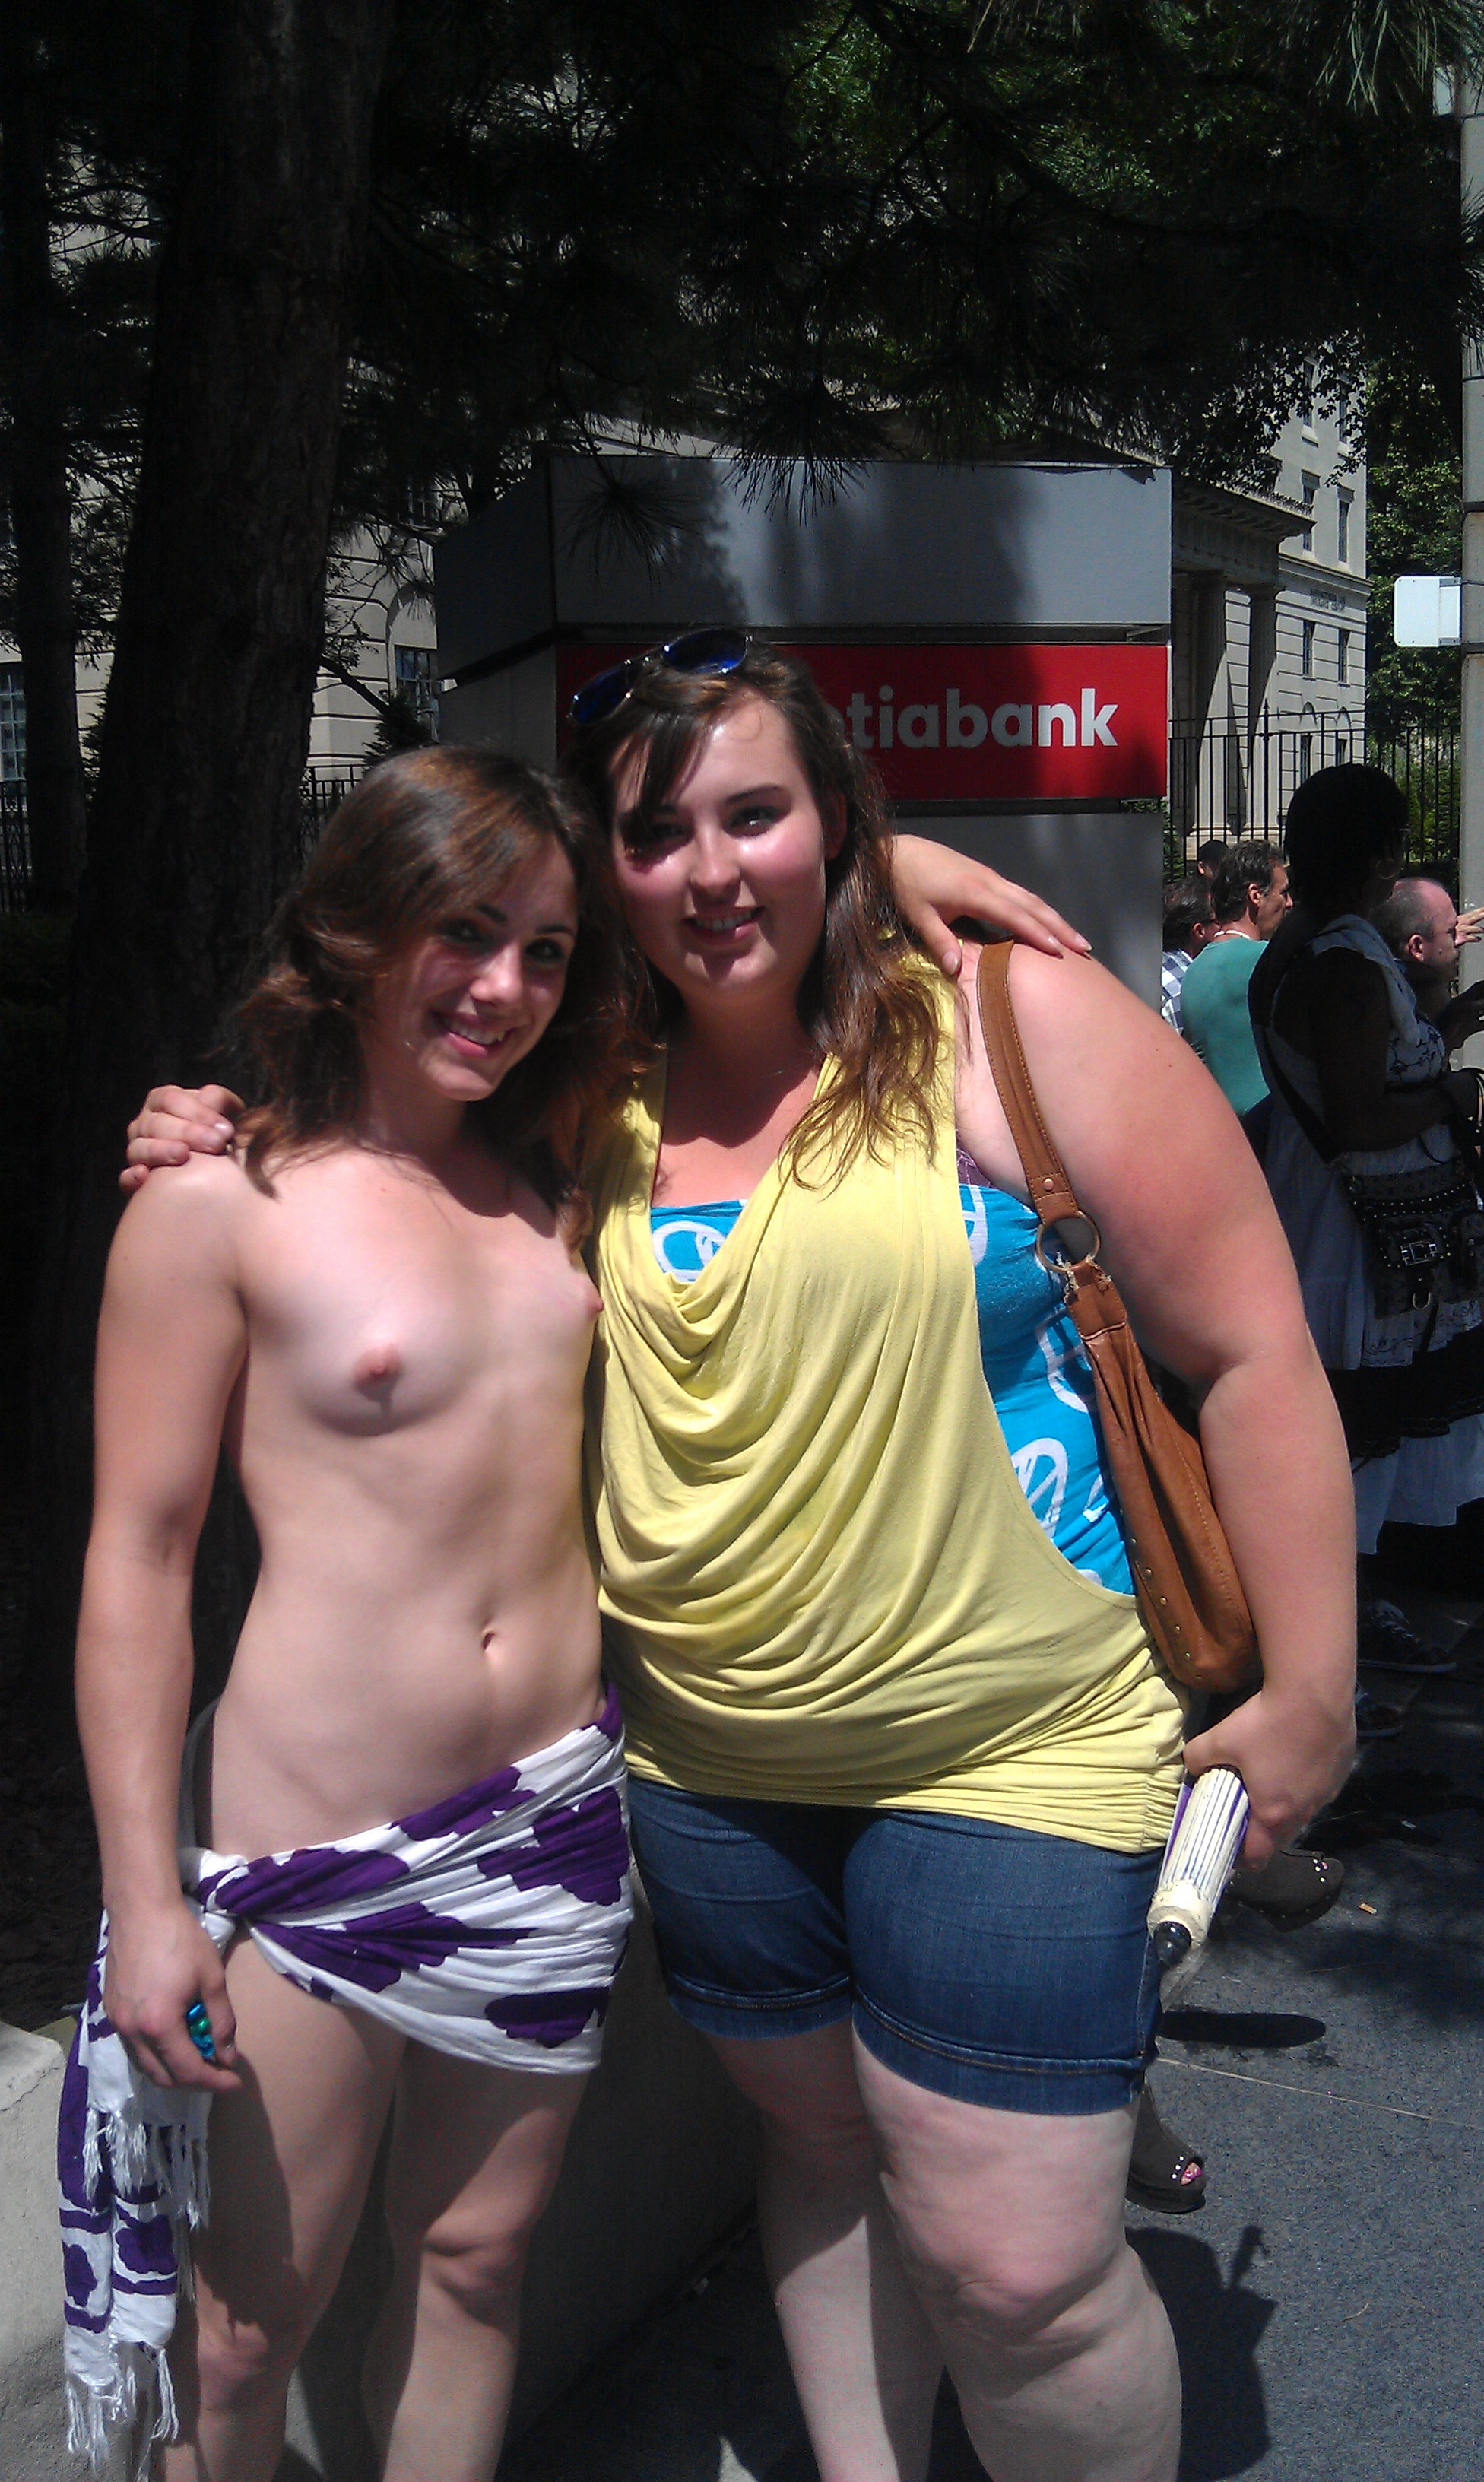 In public nudity Ama